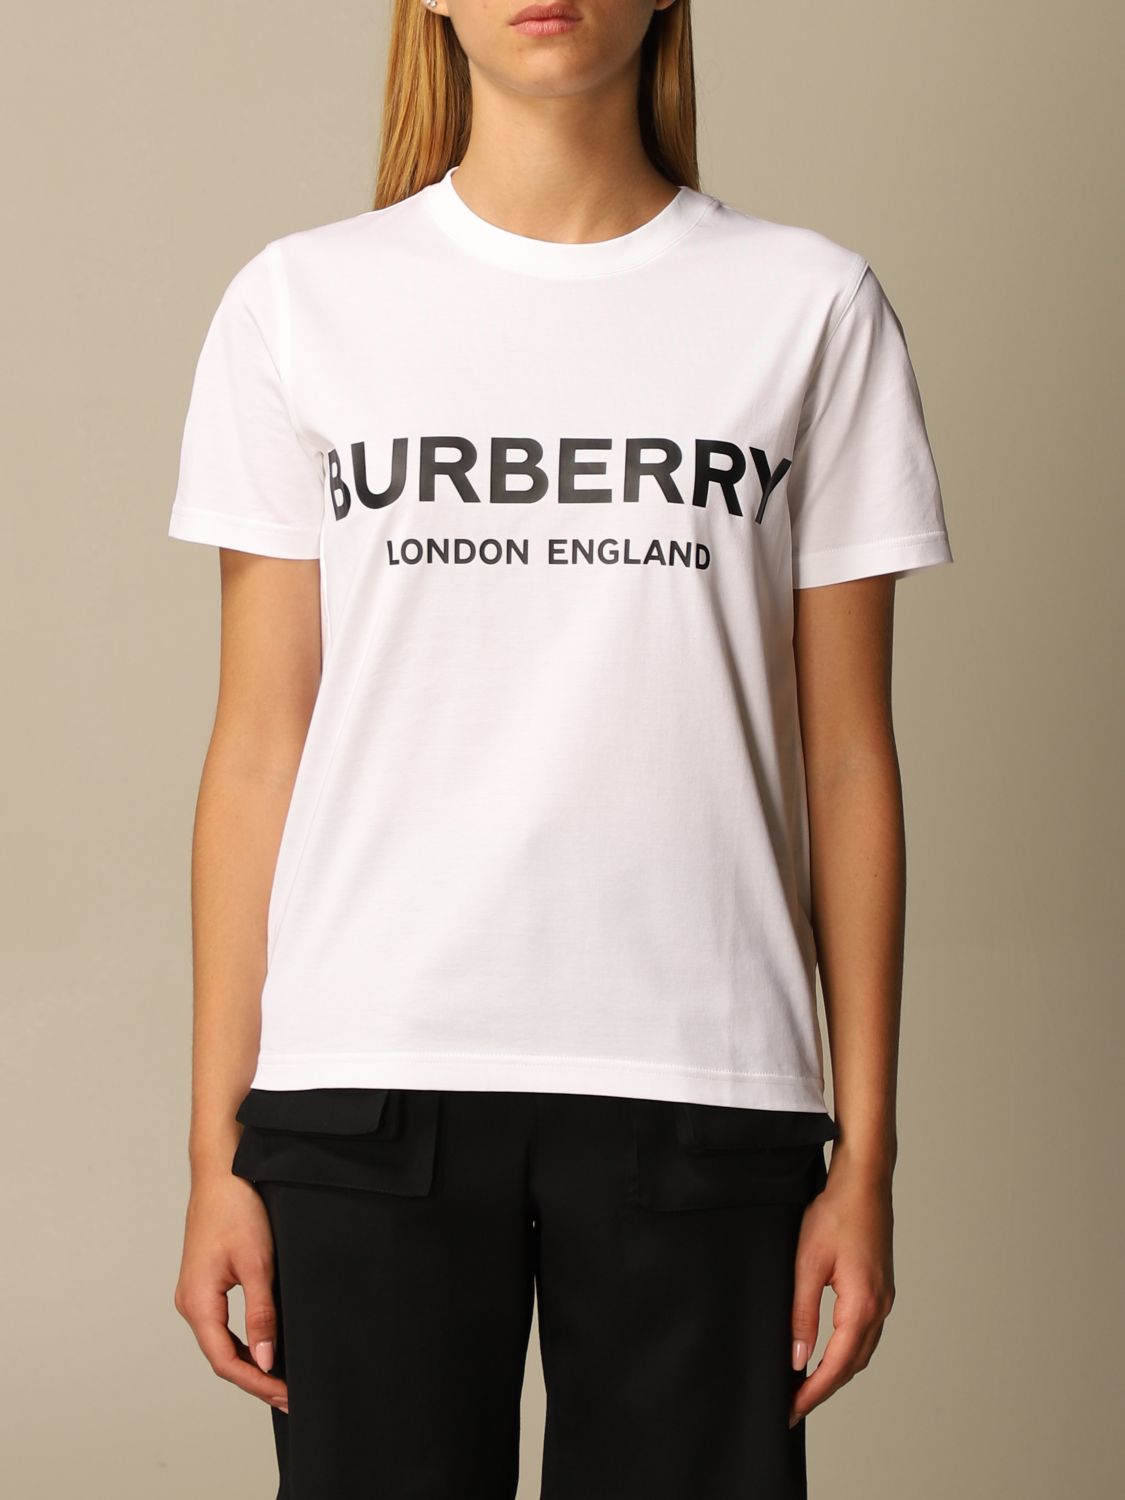 womens burberry t shirt